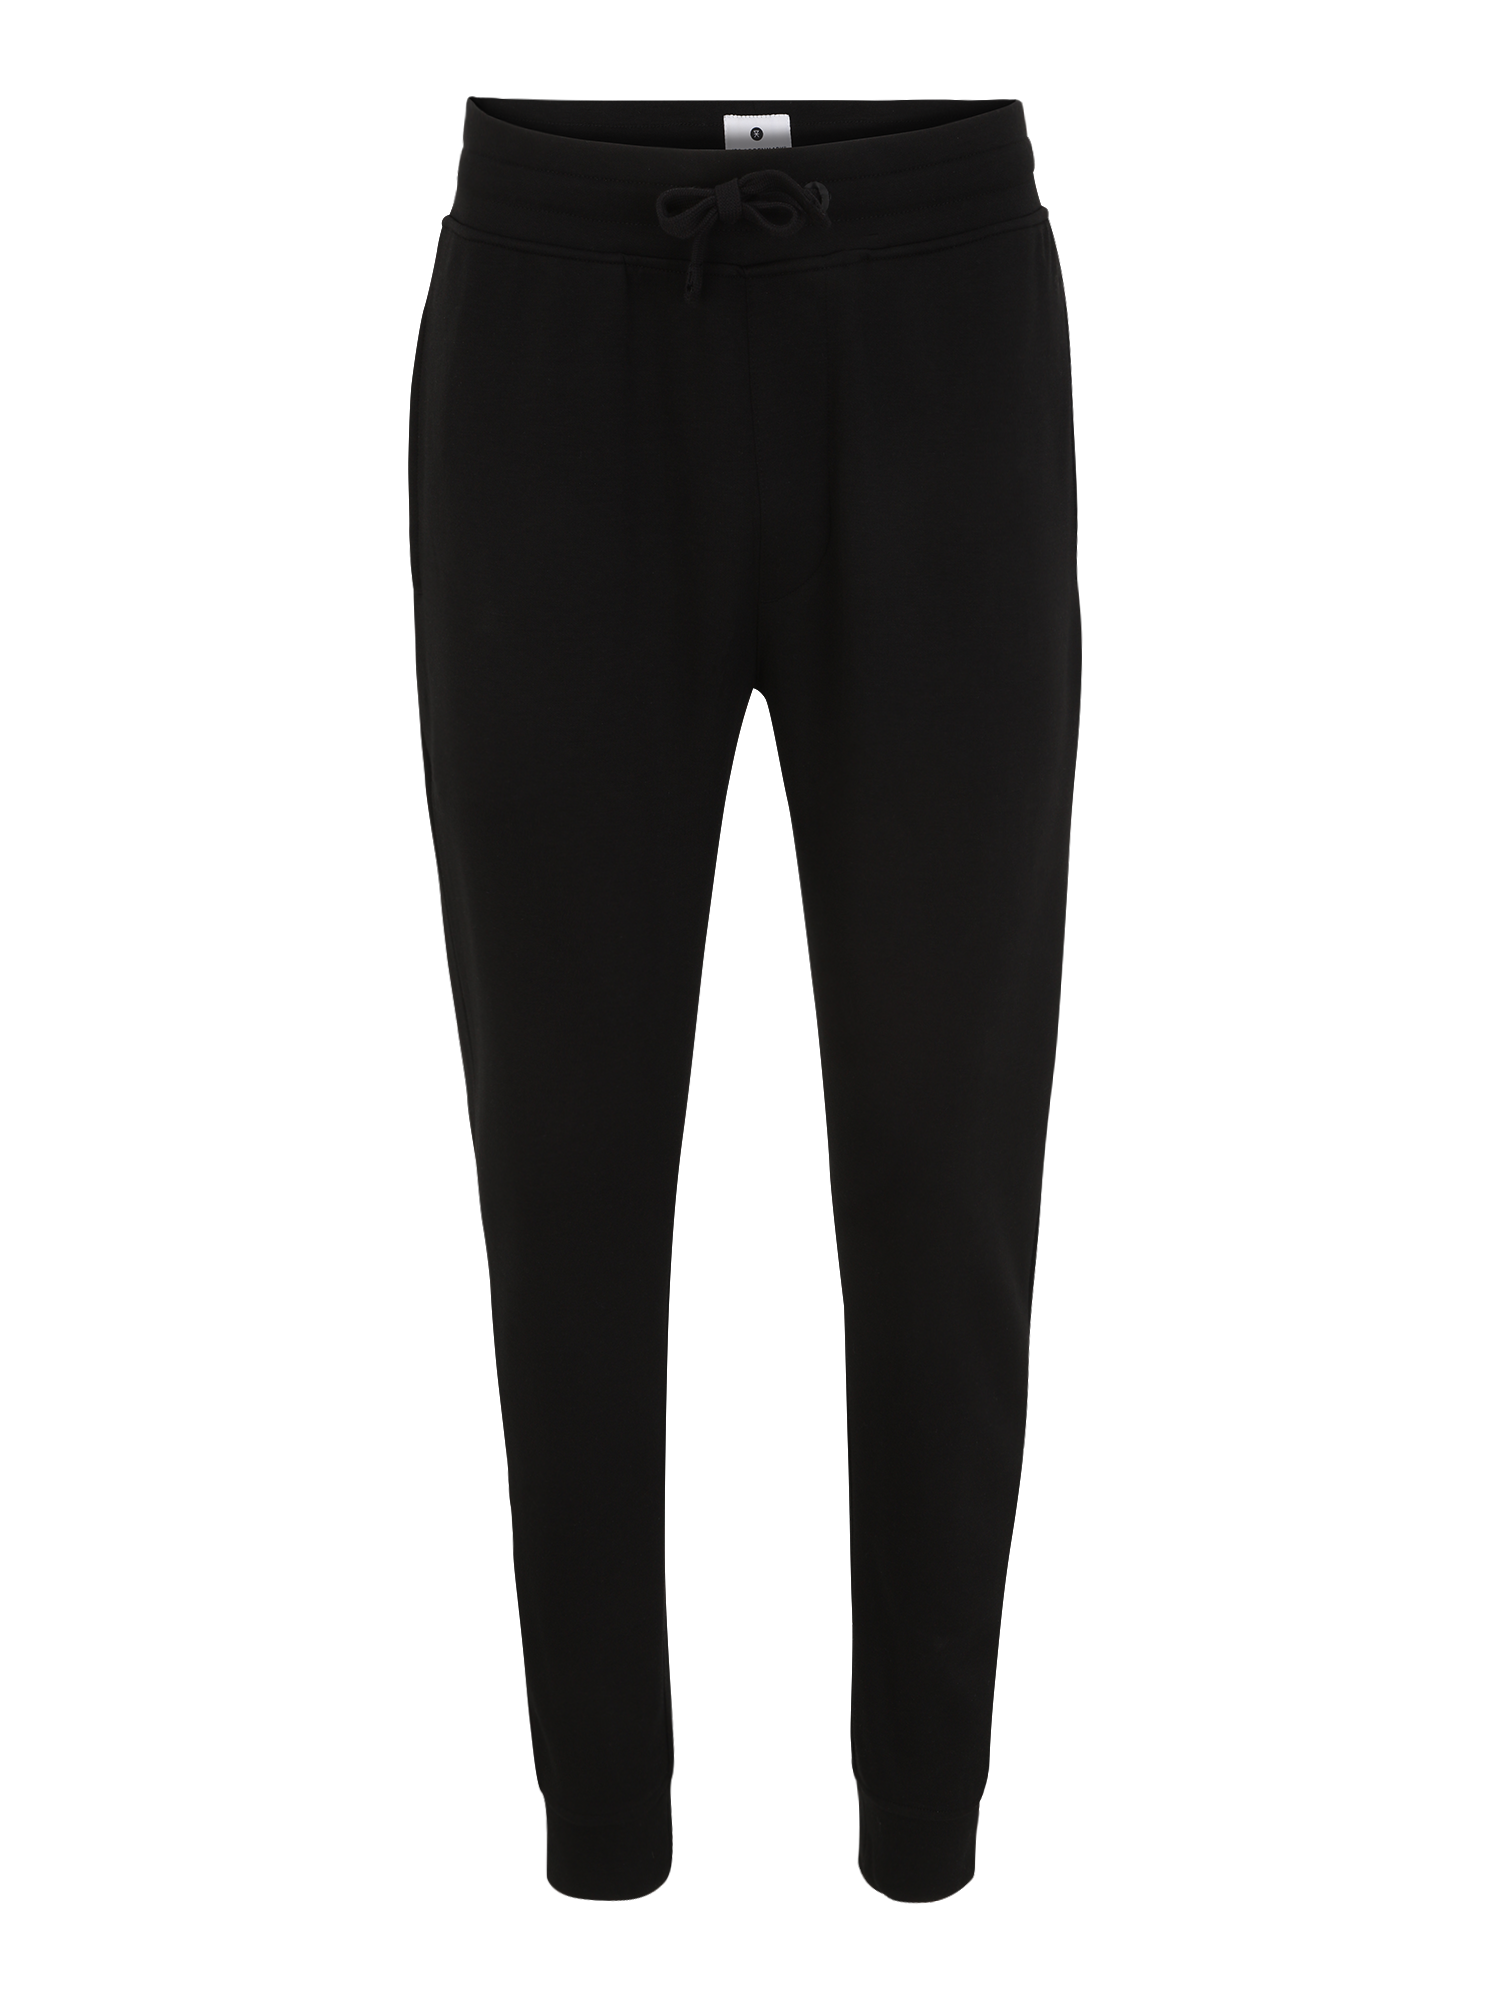 Odzież Spodnie JBS OF DENMARK Spodnie w kolorze Czarnym 